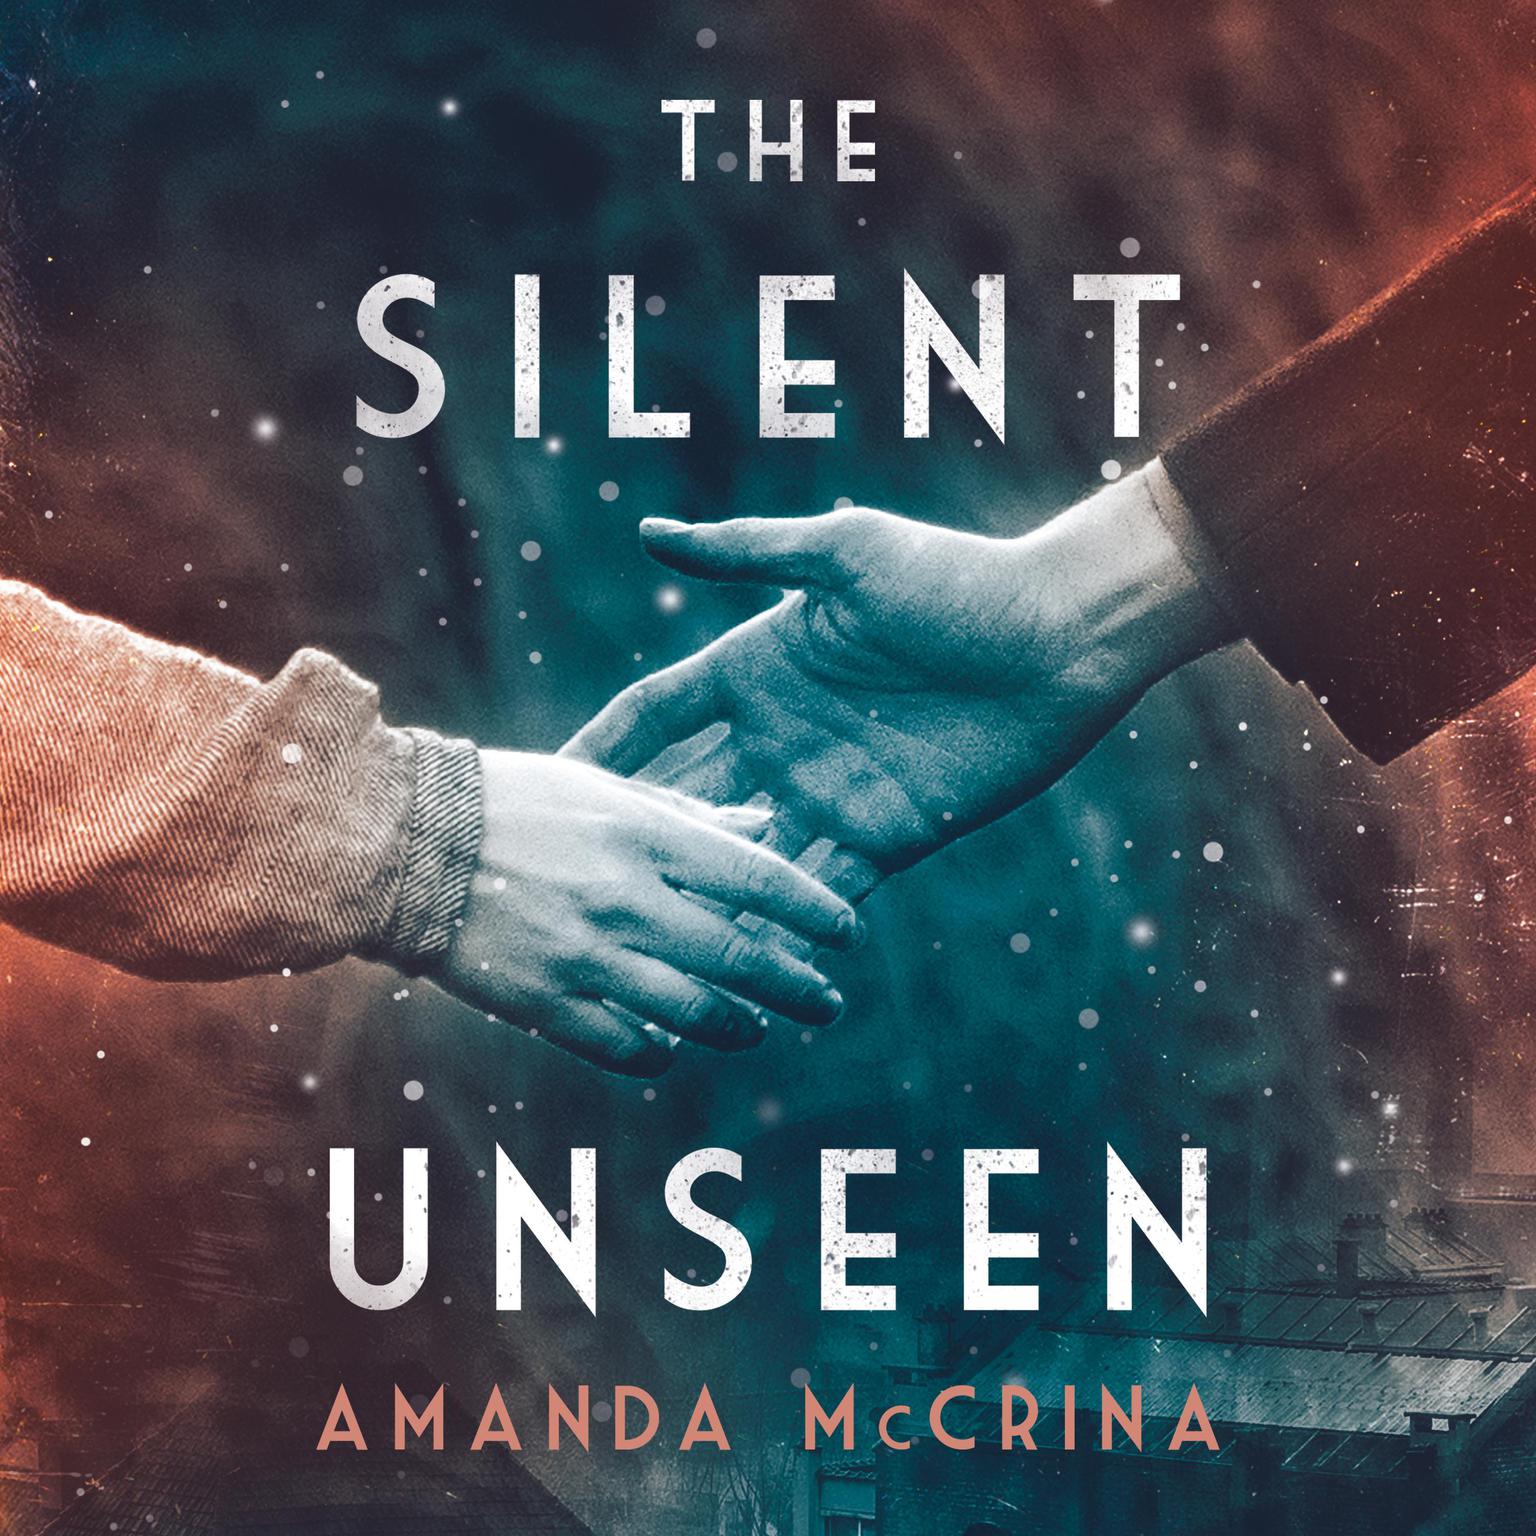 The Silent Unseen: A Novel of World War II Audiobook, by Amanda McCrina